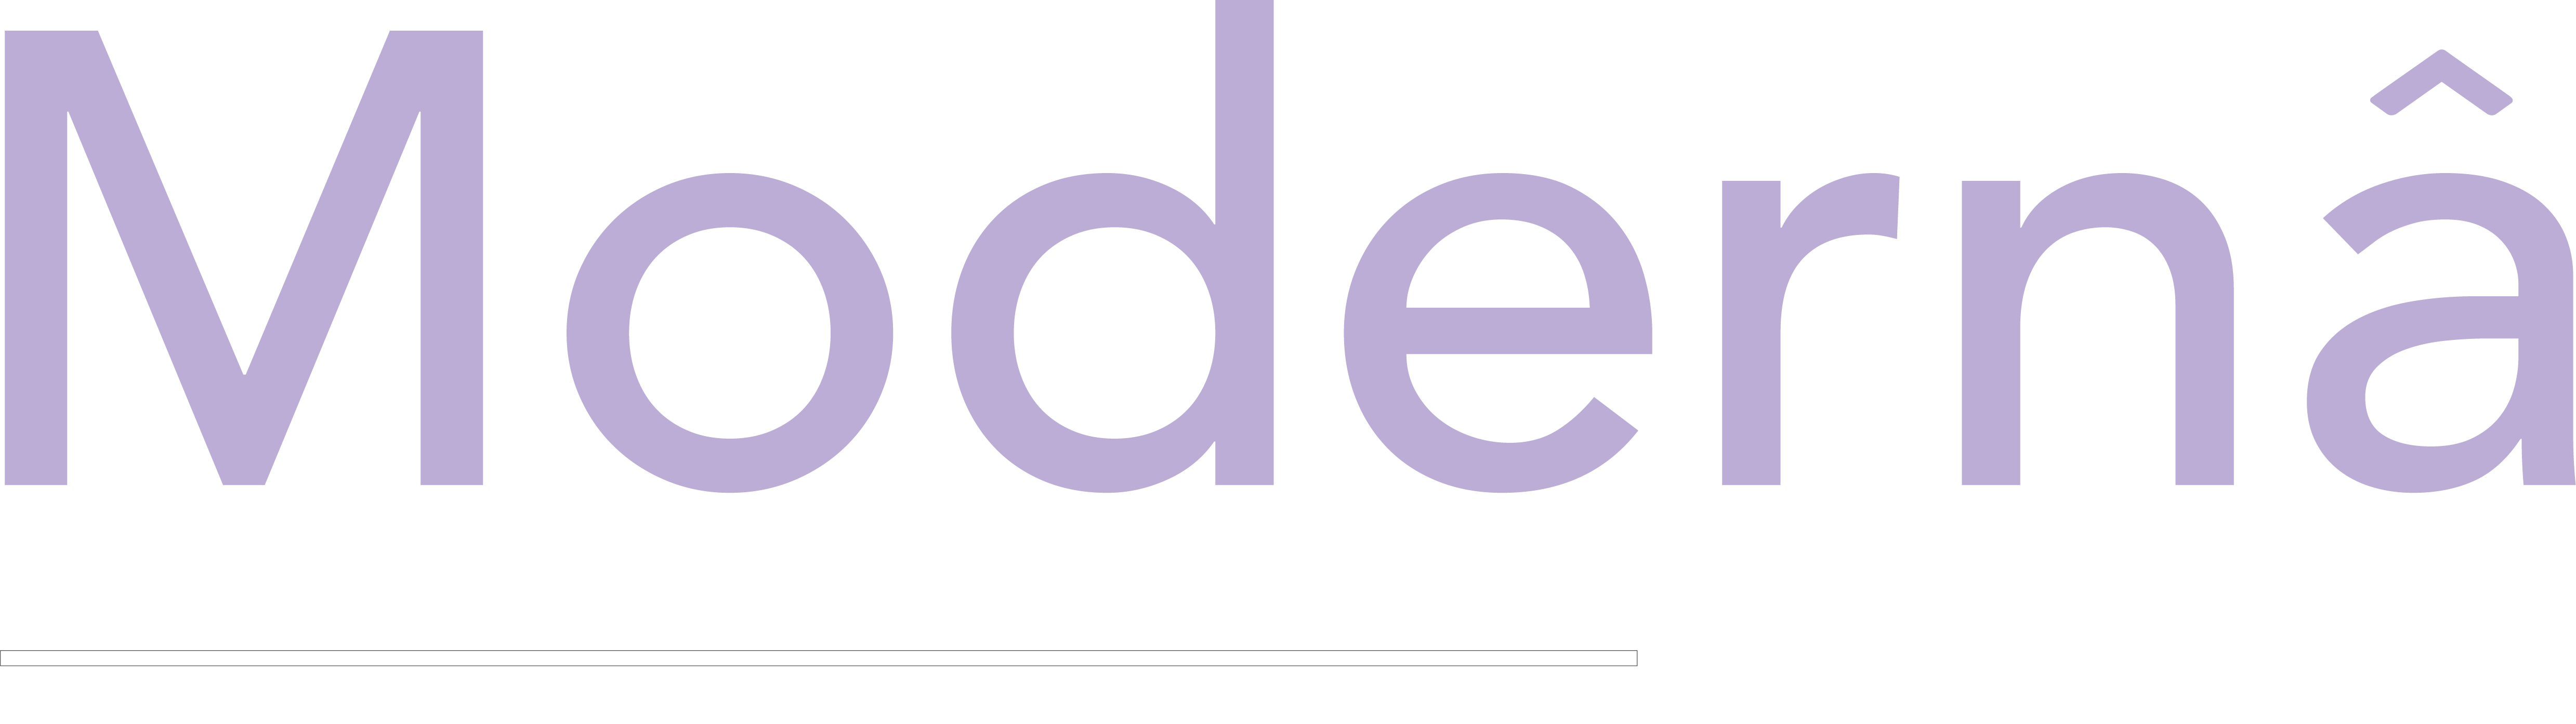 clients' logo